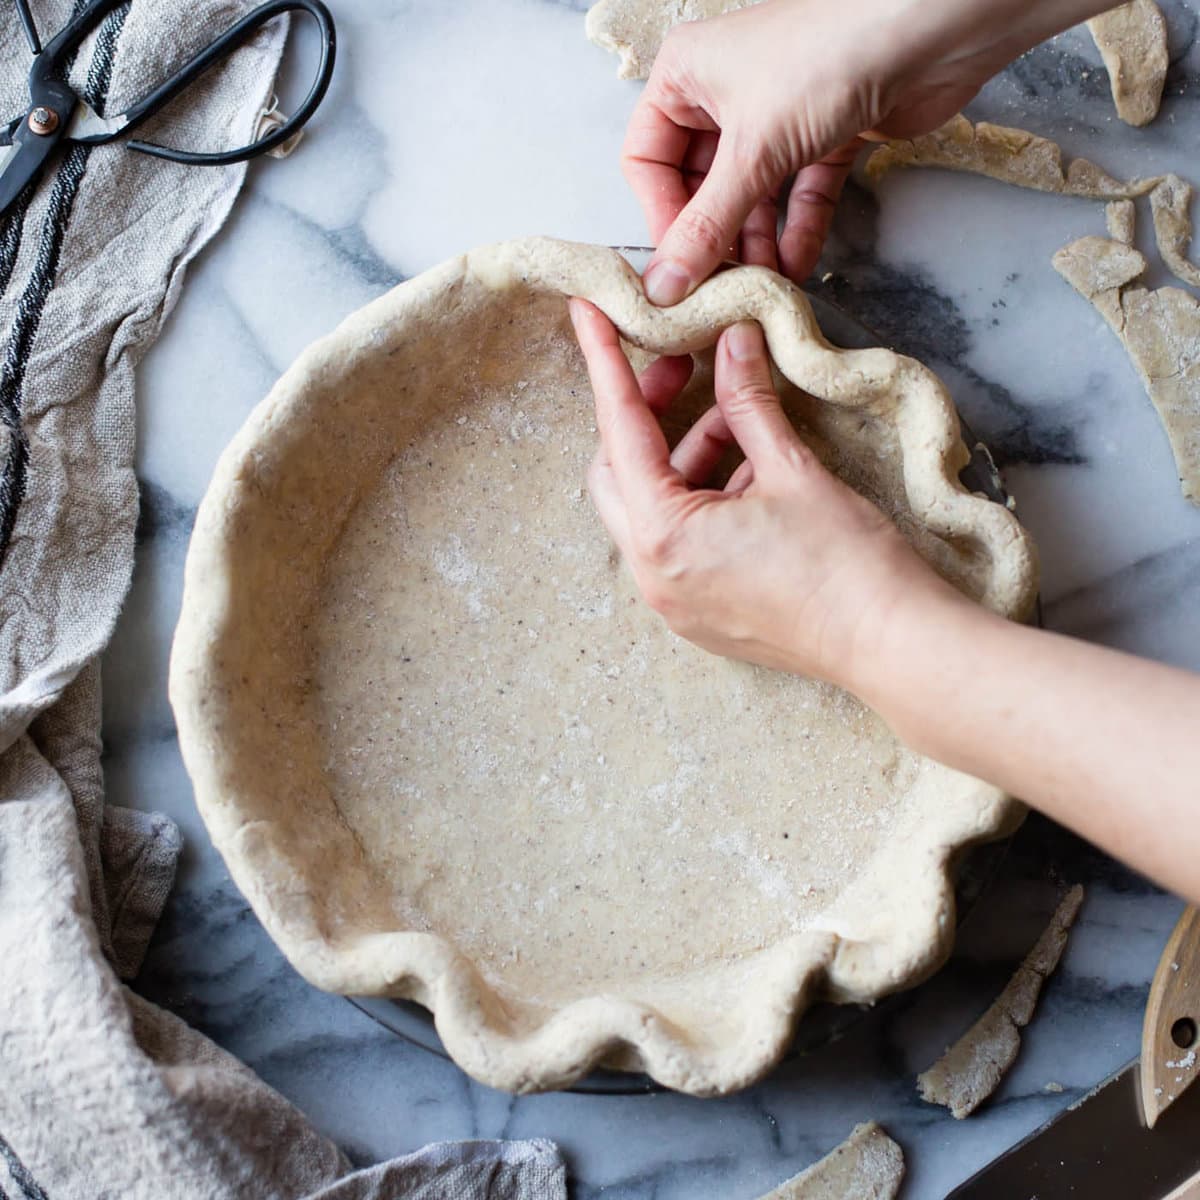 hands are fluting a gluten-free pie crust